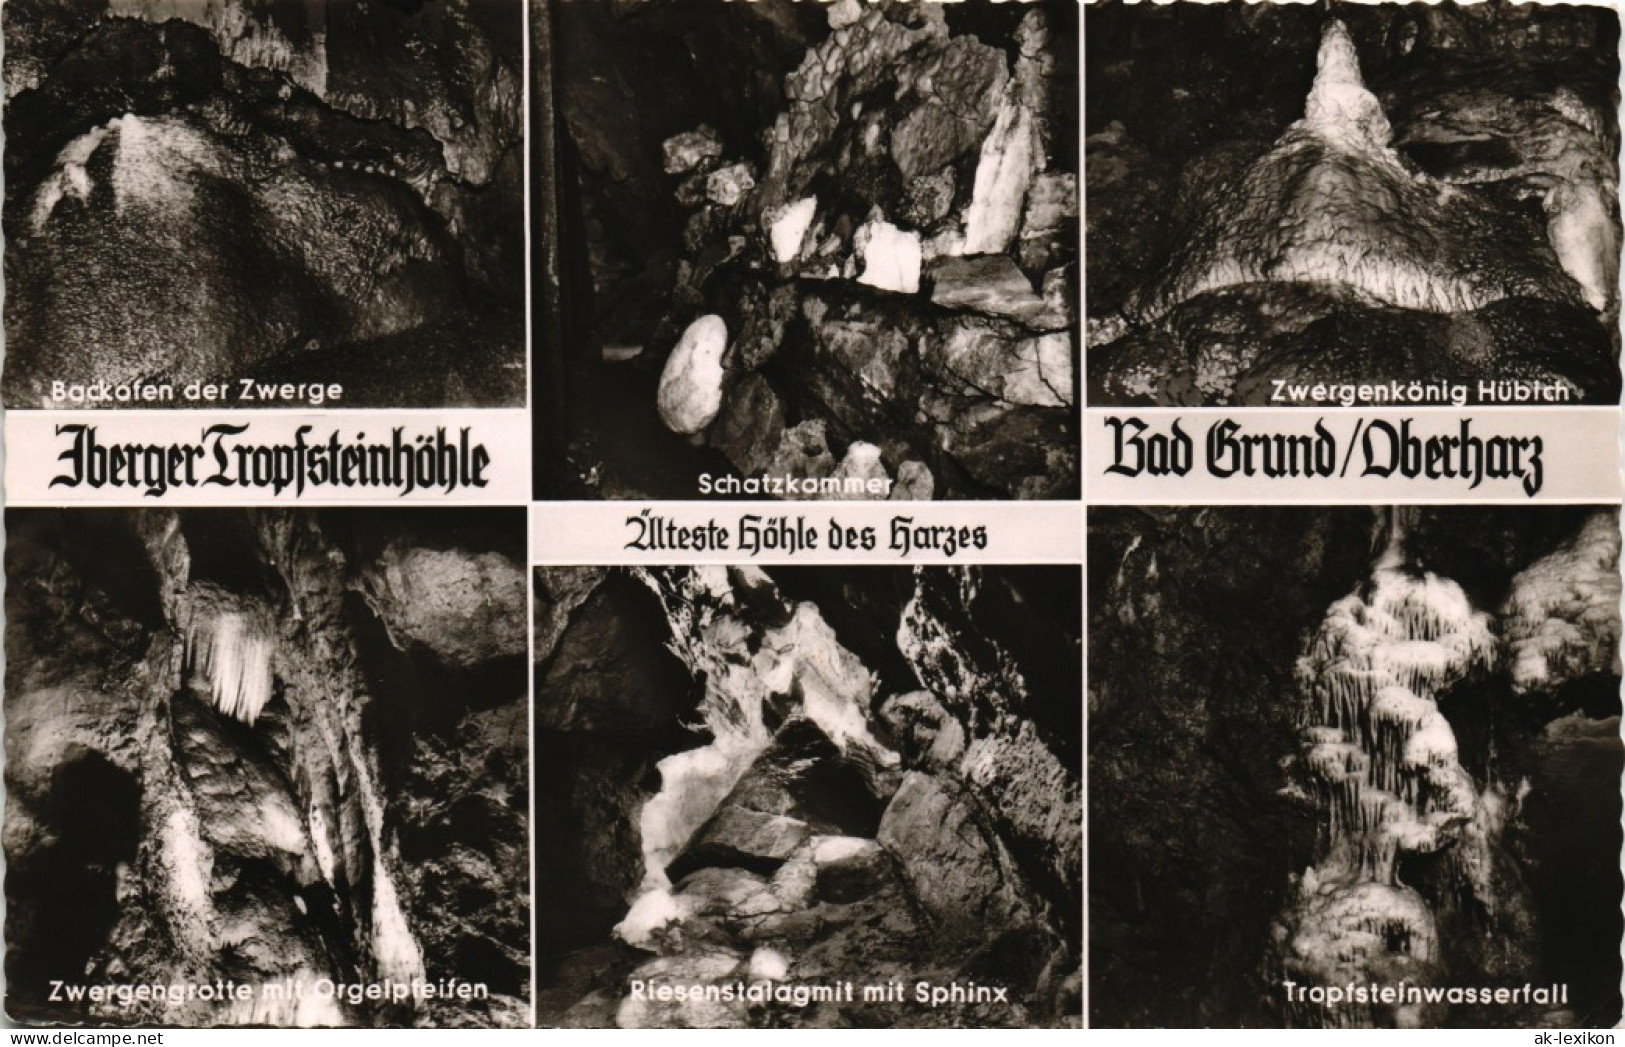 Bad Grund (Harz) Mehrbildkarte Harz Höhle Iberger Tropfsteinhöhle 1960 - Bad Grund